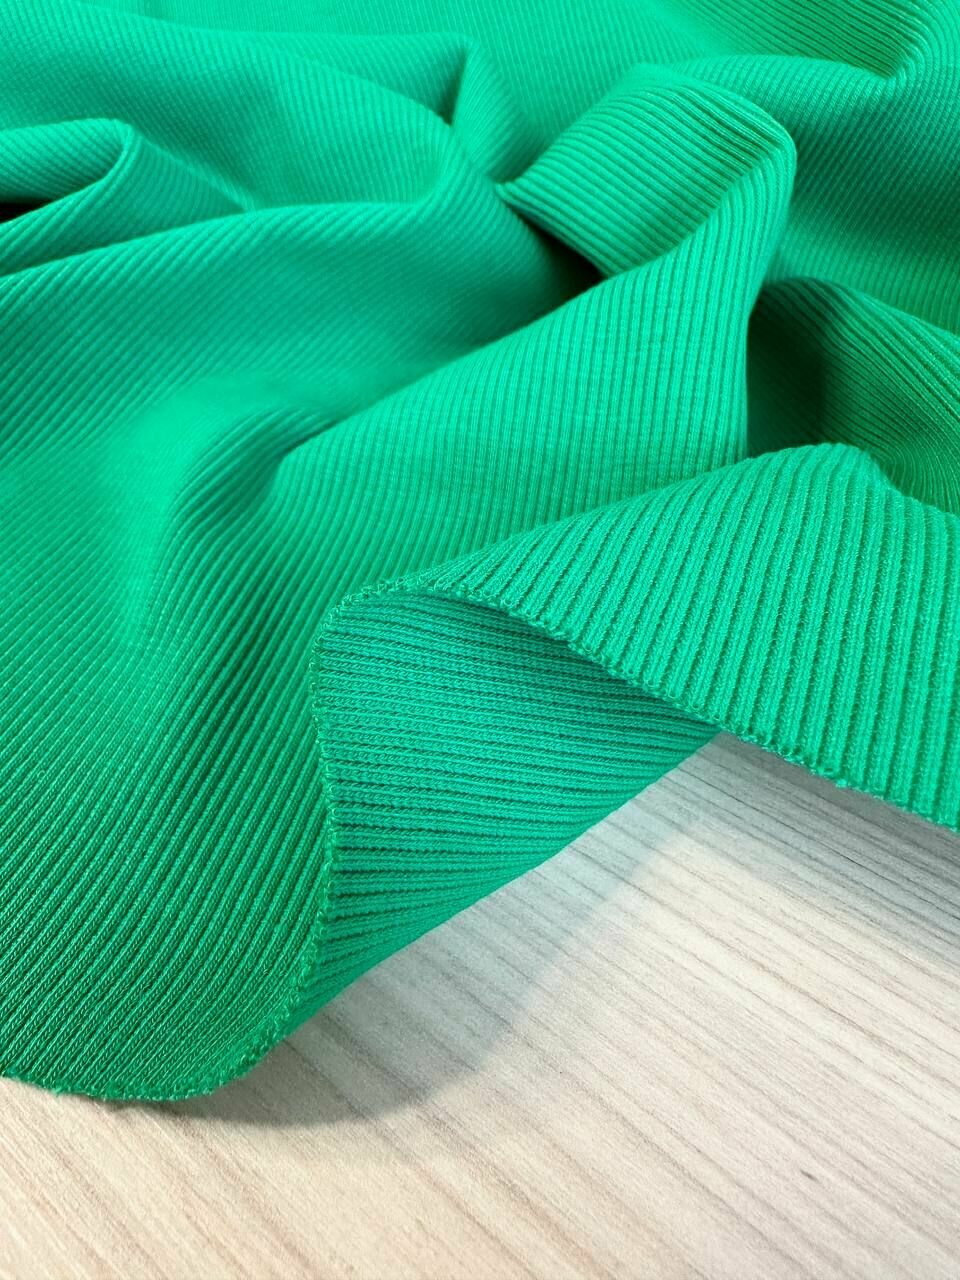 0,5м Кашкорсе трикотаж к футеру ткань для шитья подвяз, манжет, шапок и одежды. Зеленый. Отрез 50*110 см.